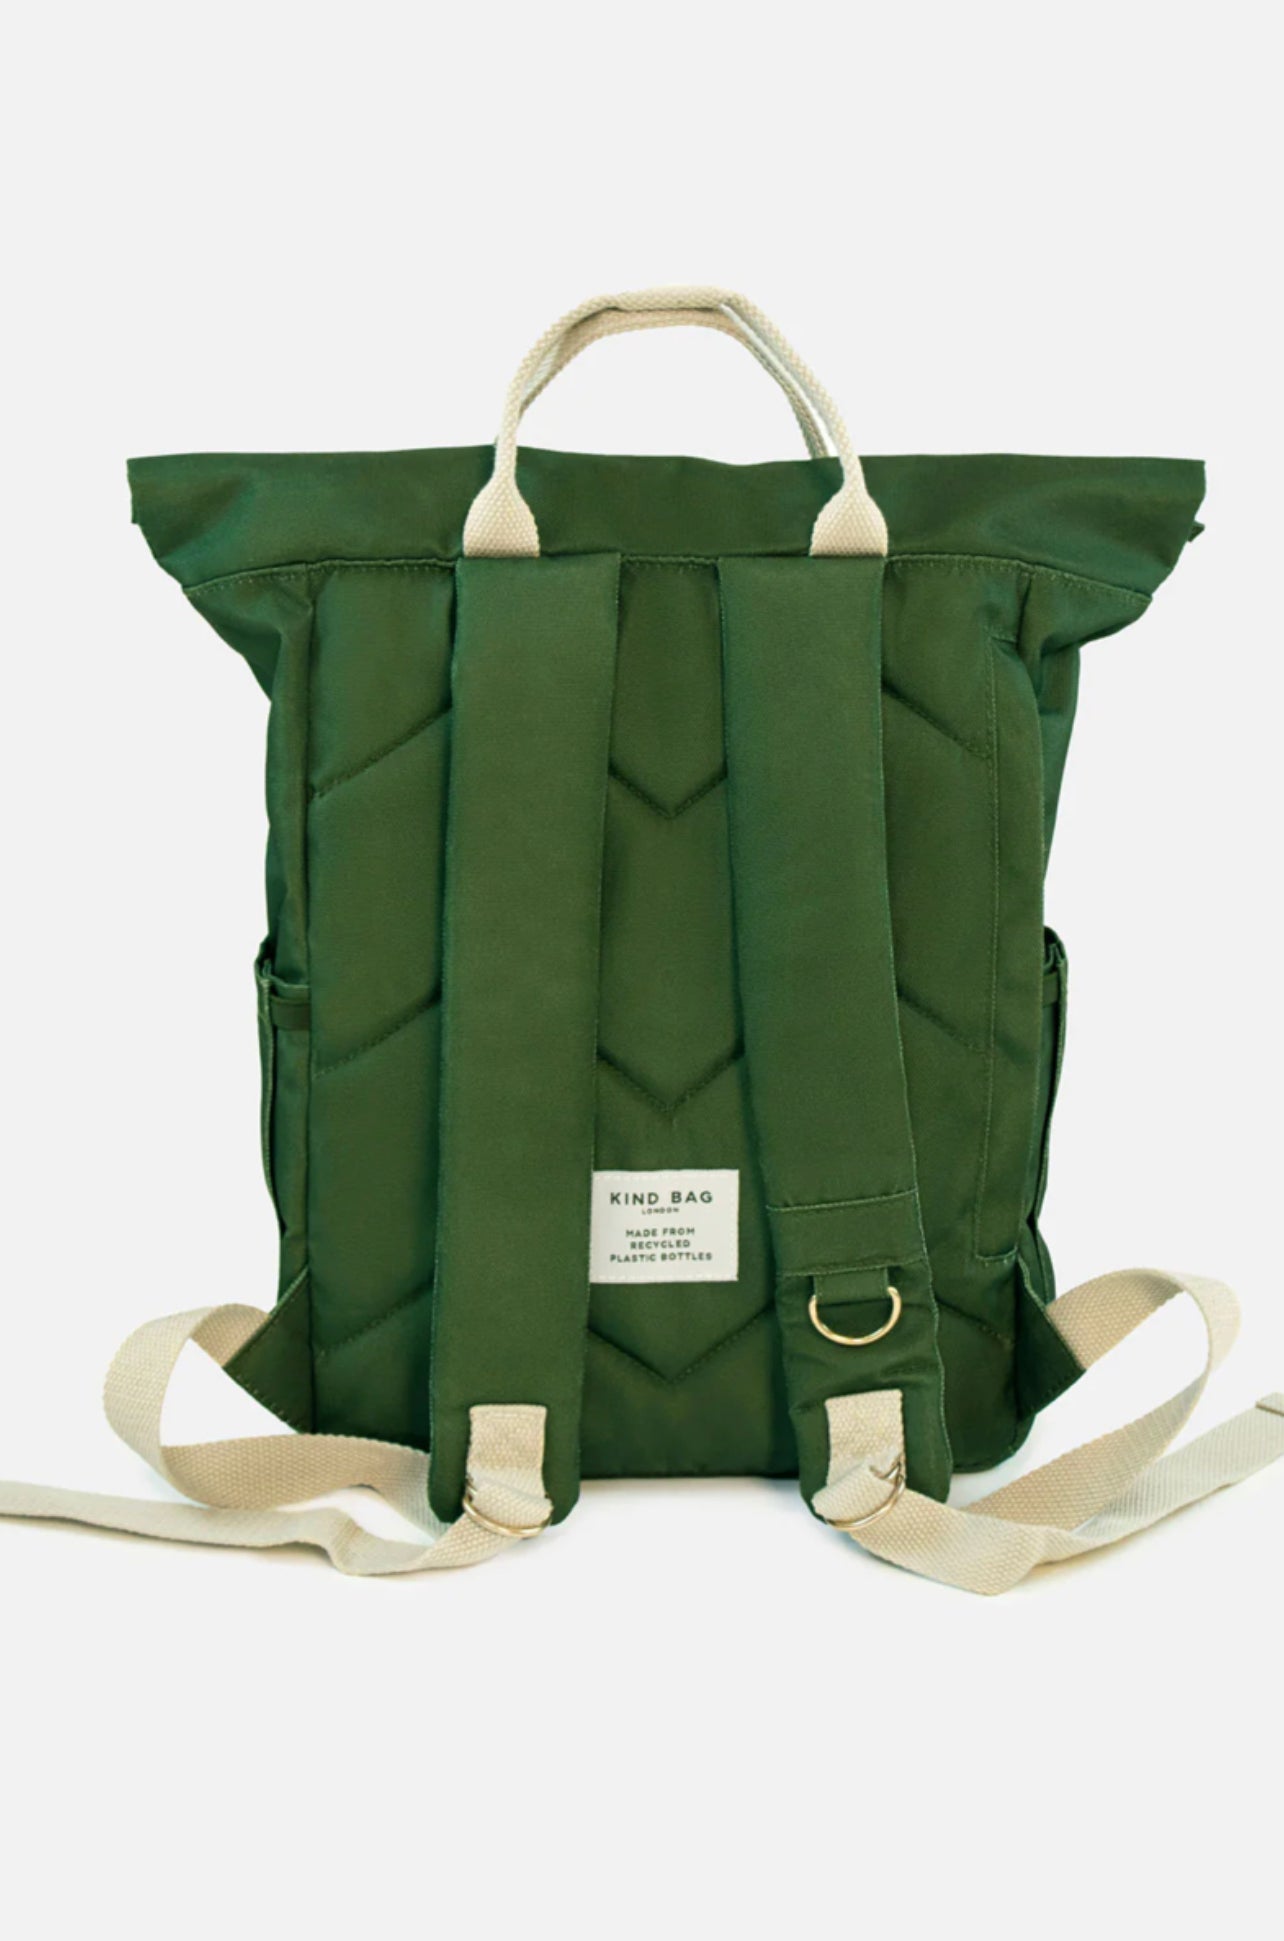 Kind Bag - Backpack, Medium - The Flower Crate